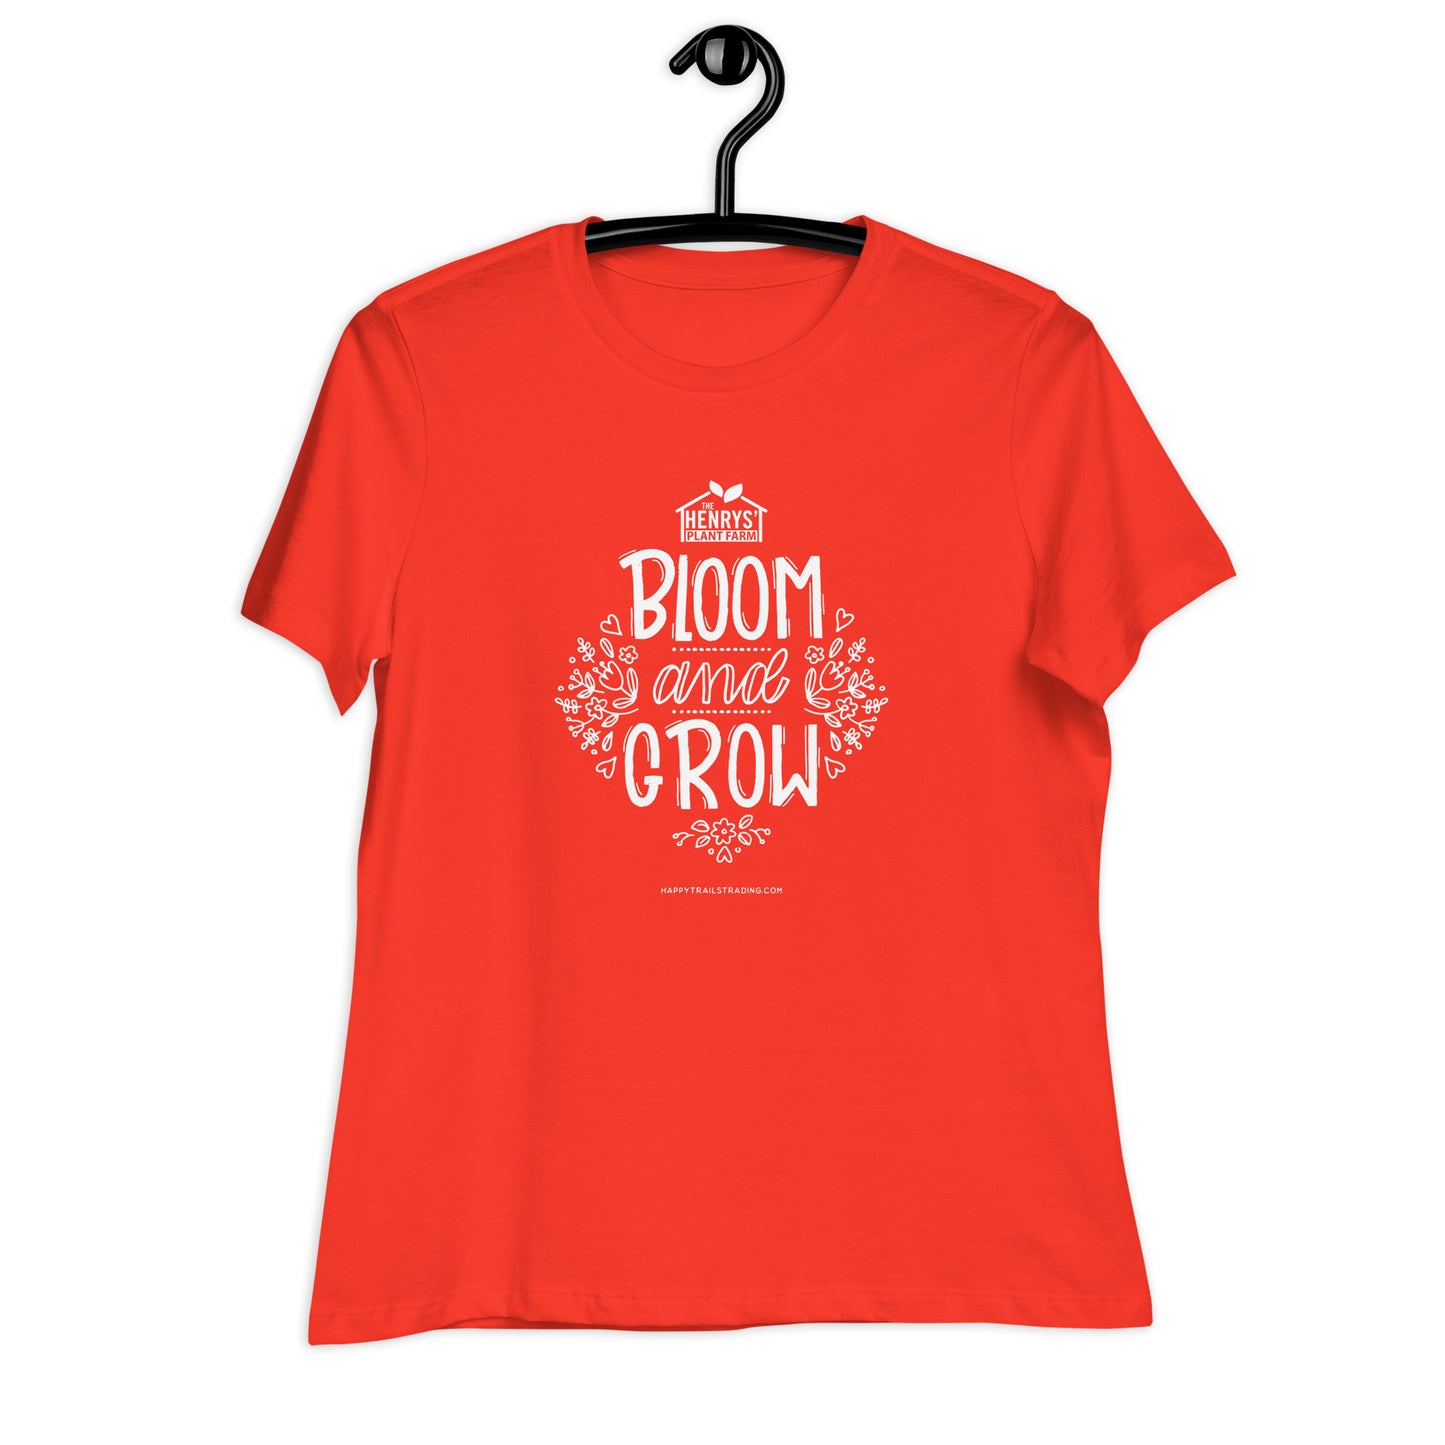 Bloom & Grow - Women's Relaxed T-Shirt